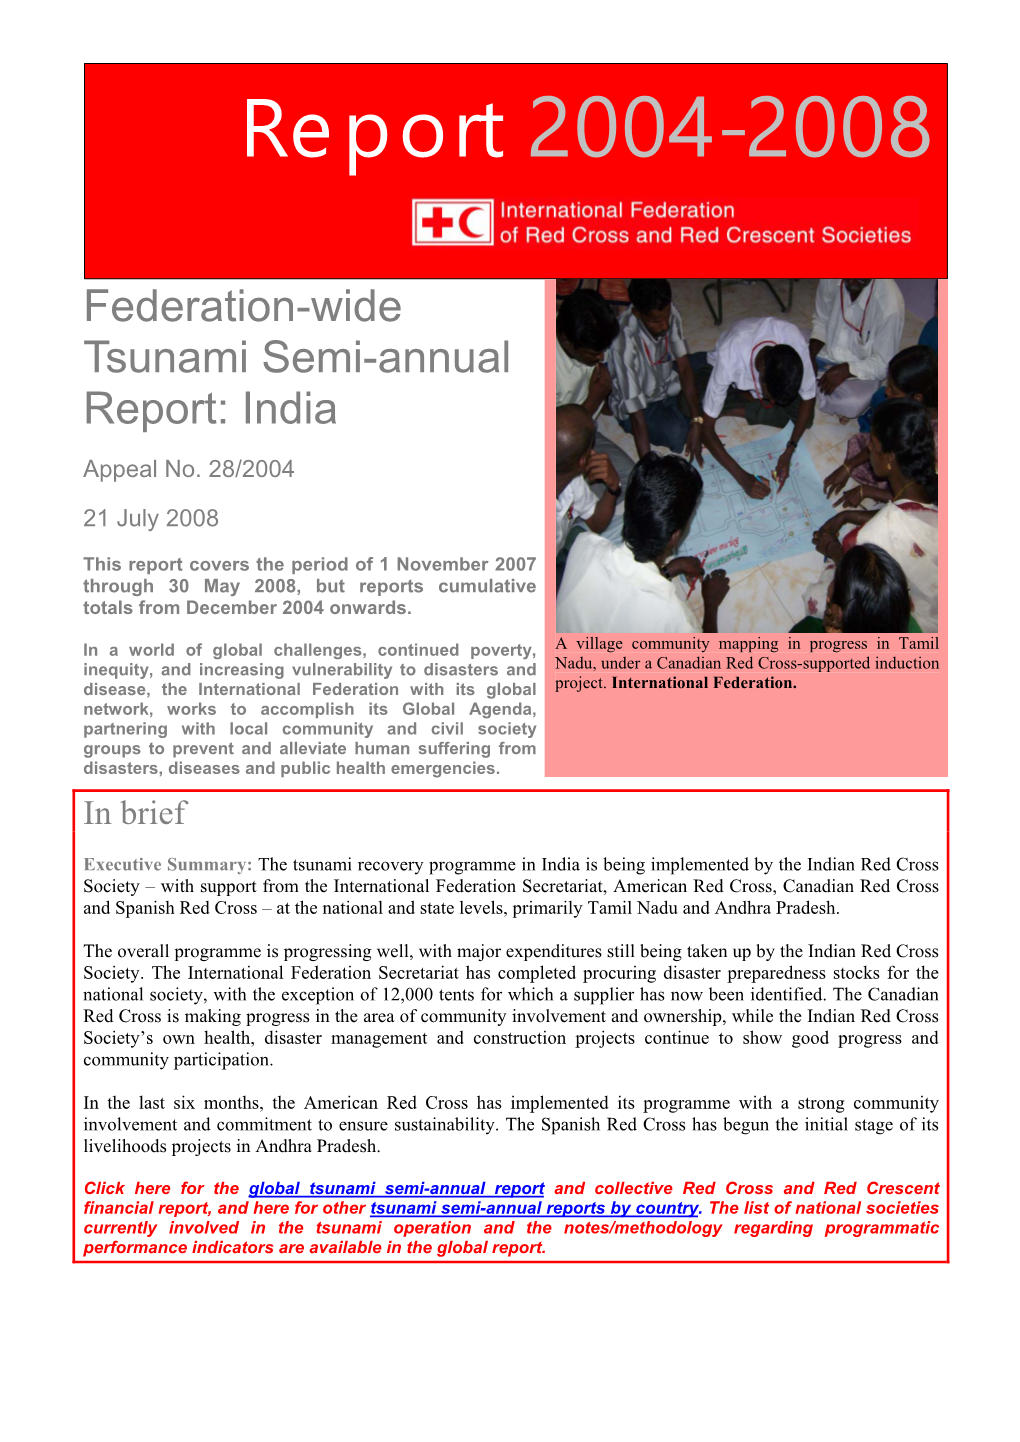 Federation-Wide Semi-Annual Report 2004-2008